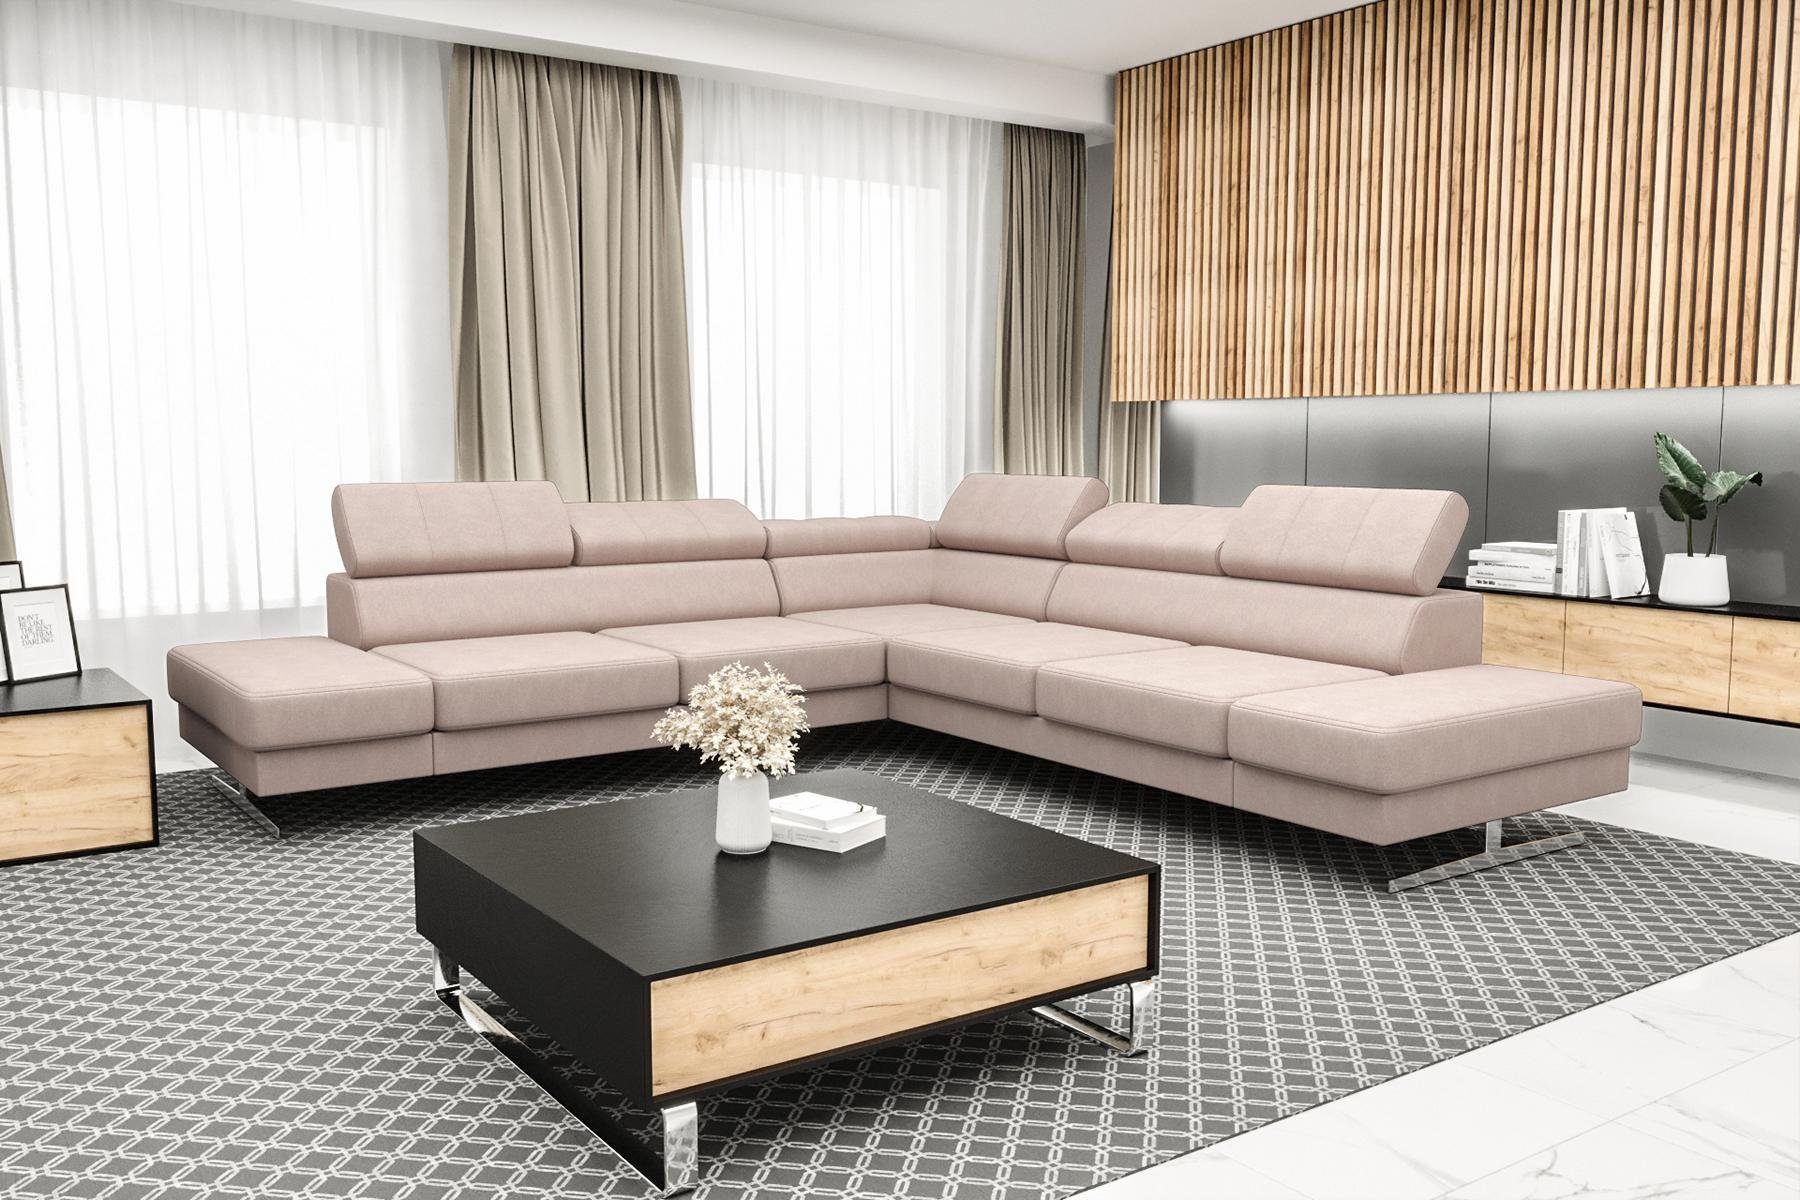 Europe JVmoebel Wohnzimmer Designer Couch in Made Sofa Ecksofa Textil, Luxus L-Form Schwarzes Rosa